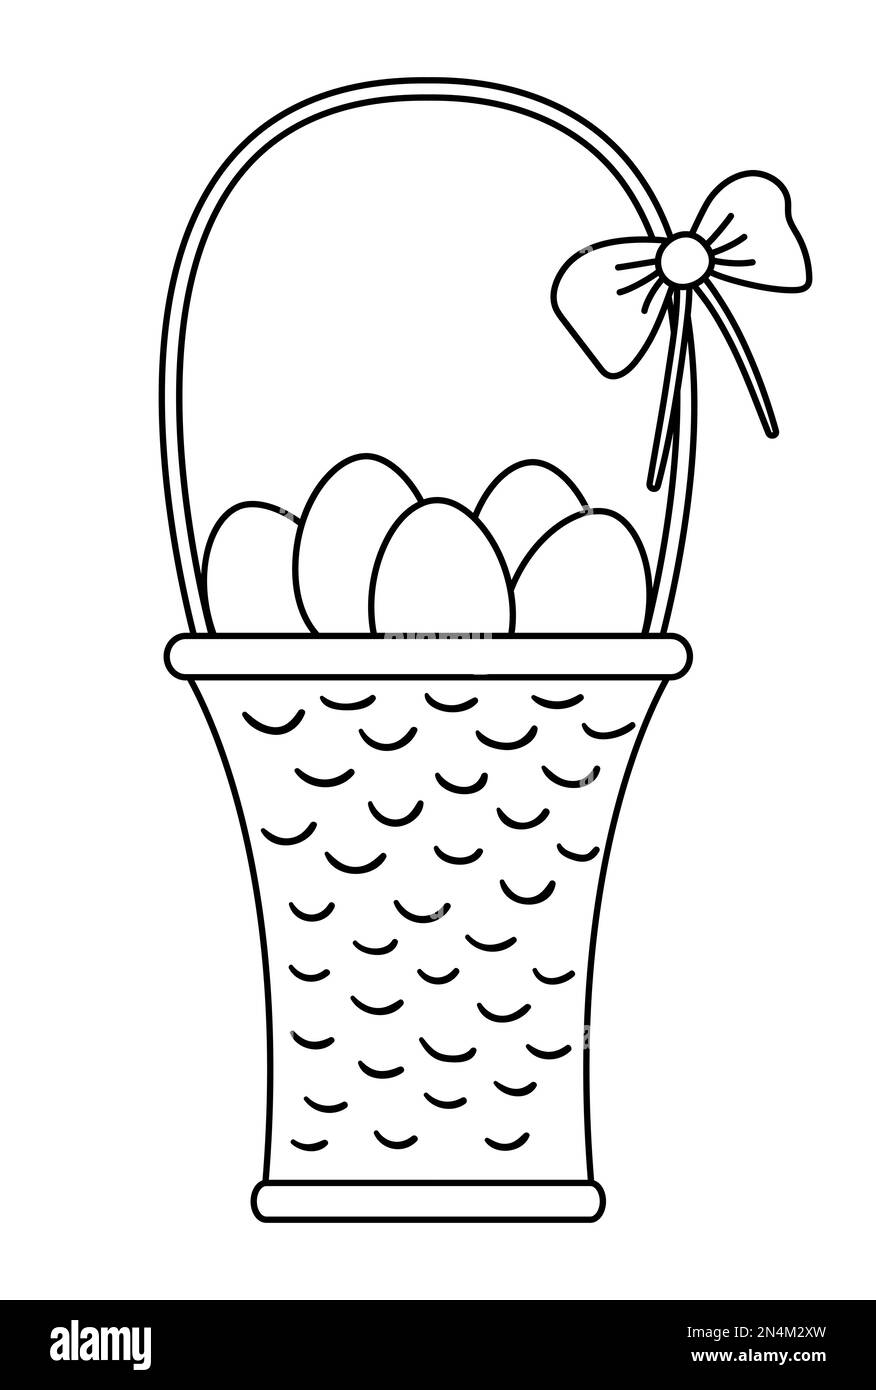 Vektor Schwarz-Weiß-Darstellung eines Korbs mit Eiern und Schleife. Osterumriss traditionelles Symbol und Designelement. Niedliche Legende oder Farbgebung mit Frühlingslinie Stock Vektor